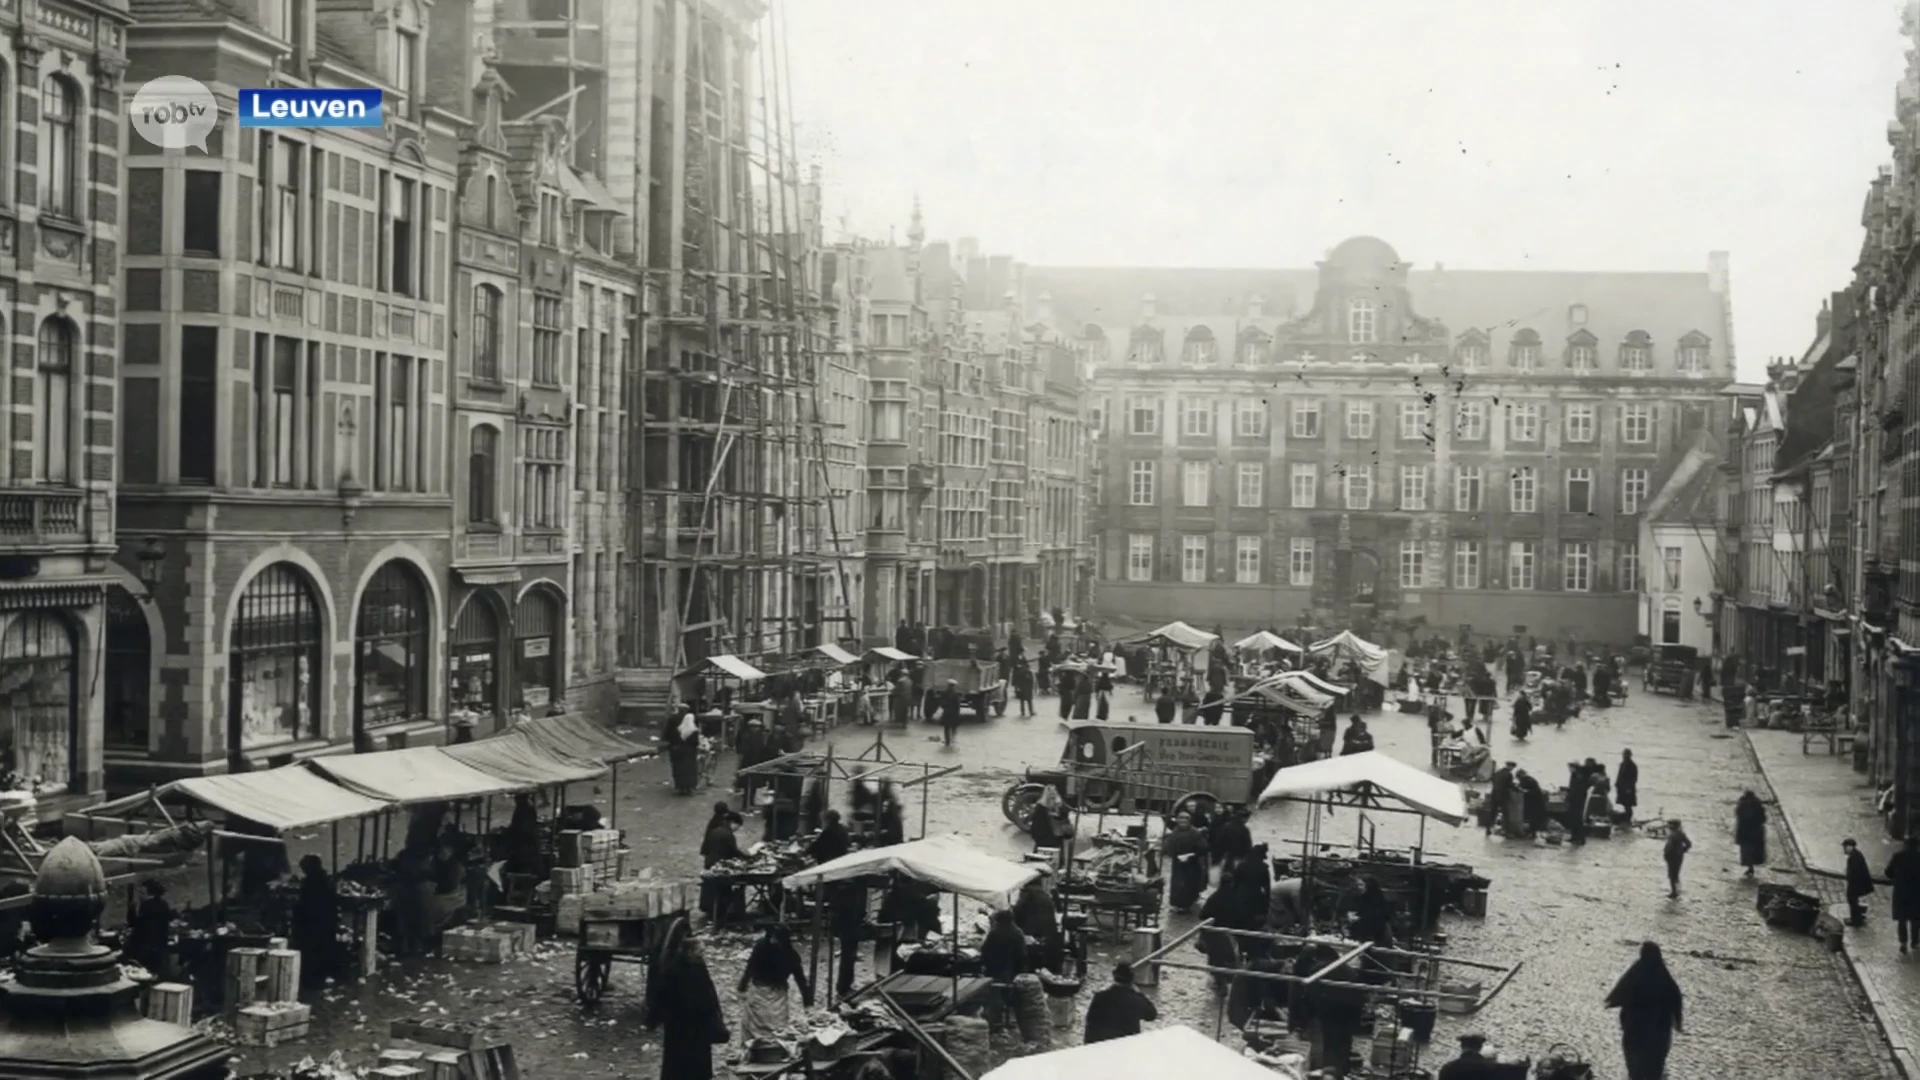 Boek 'Lekkere plekken' brengt oude foto's en verhalen uit Leuvense geschiedenis samen